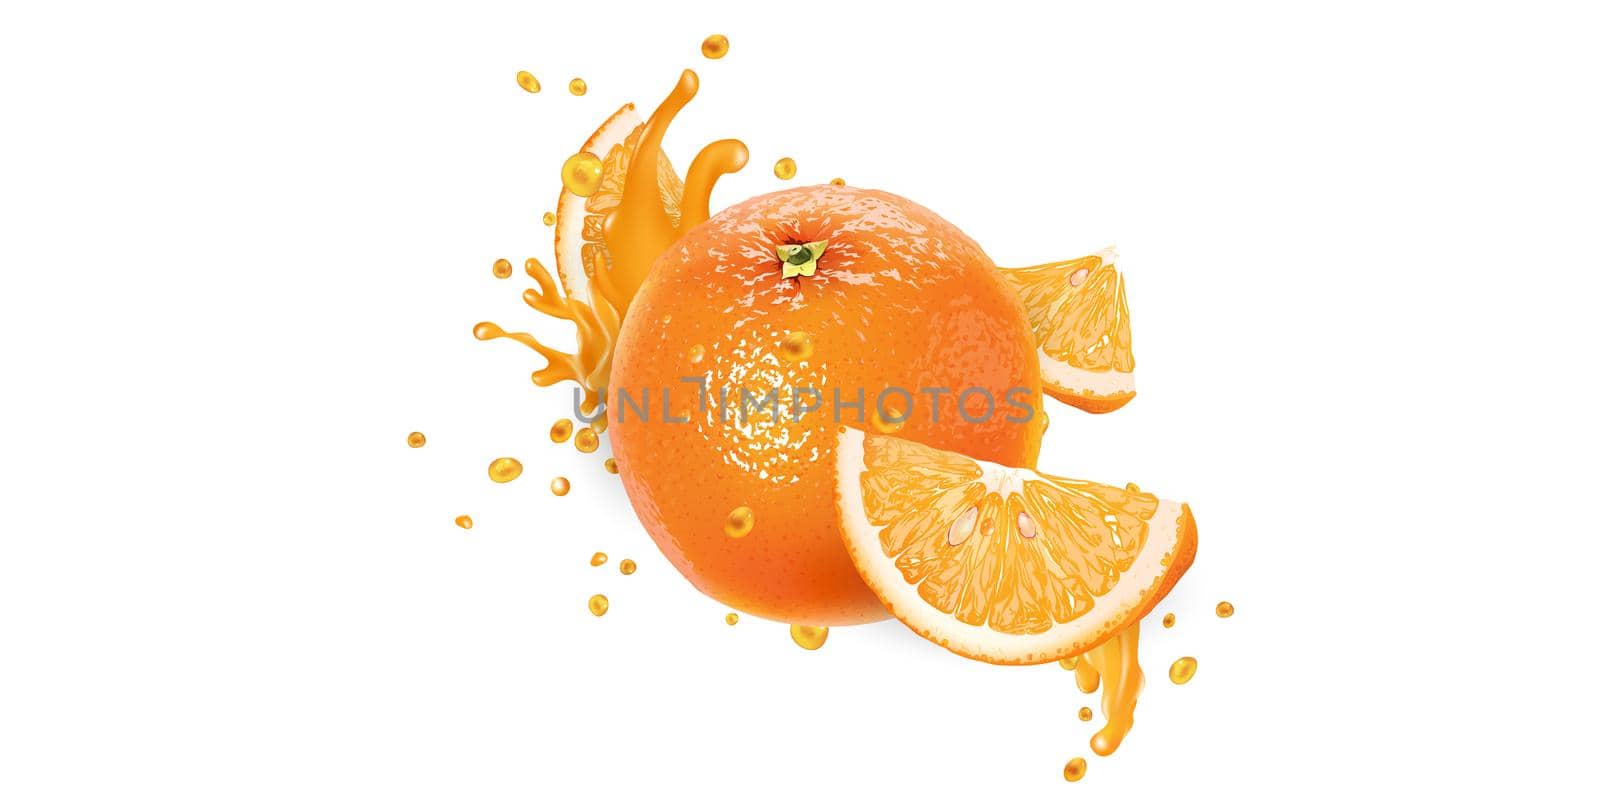 Fresh orange in splashes of fruit juice on a white background. Realistic style illustration.